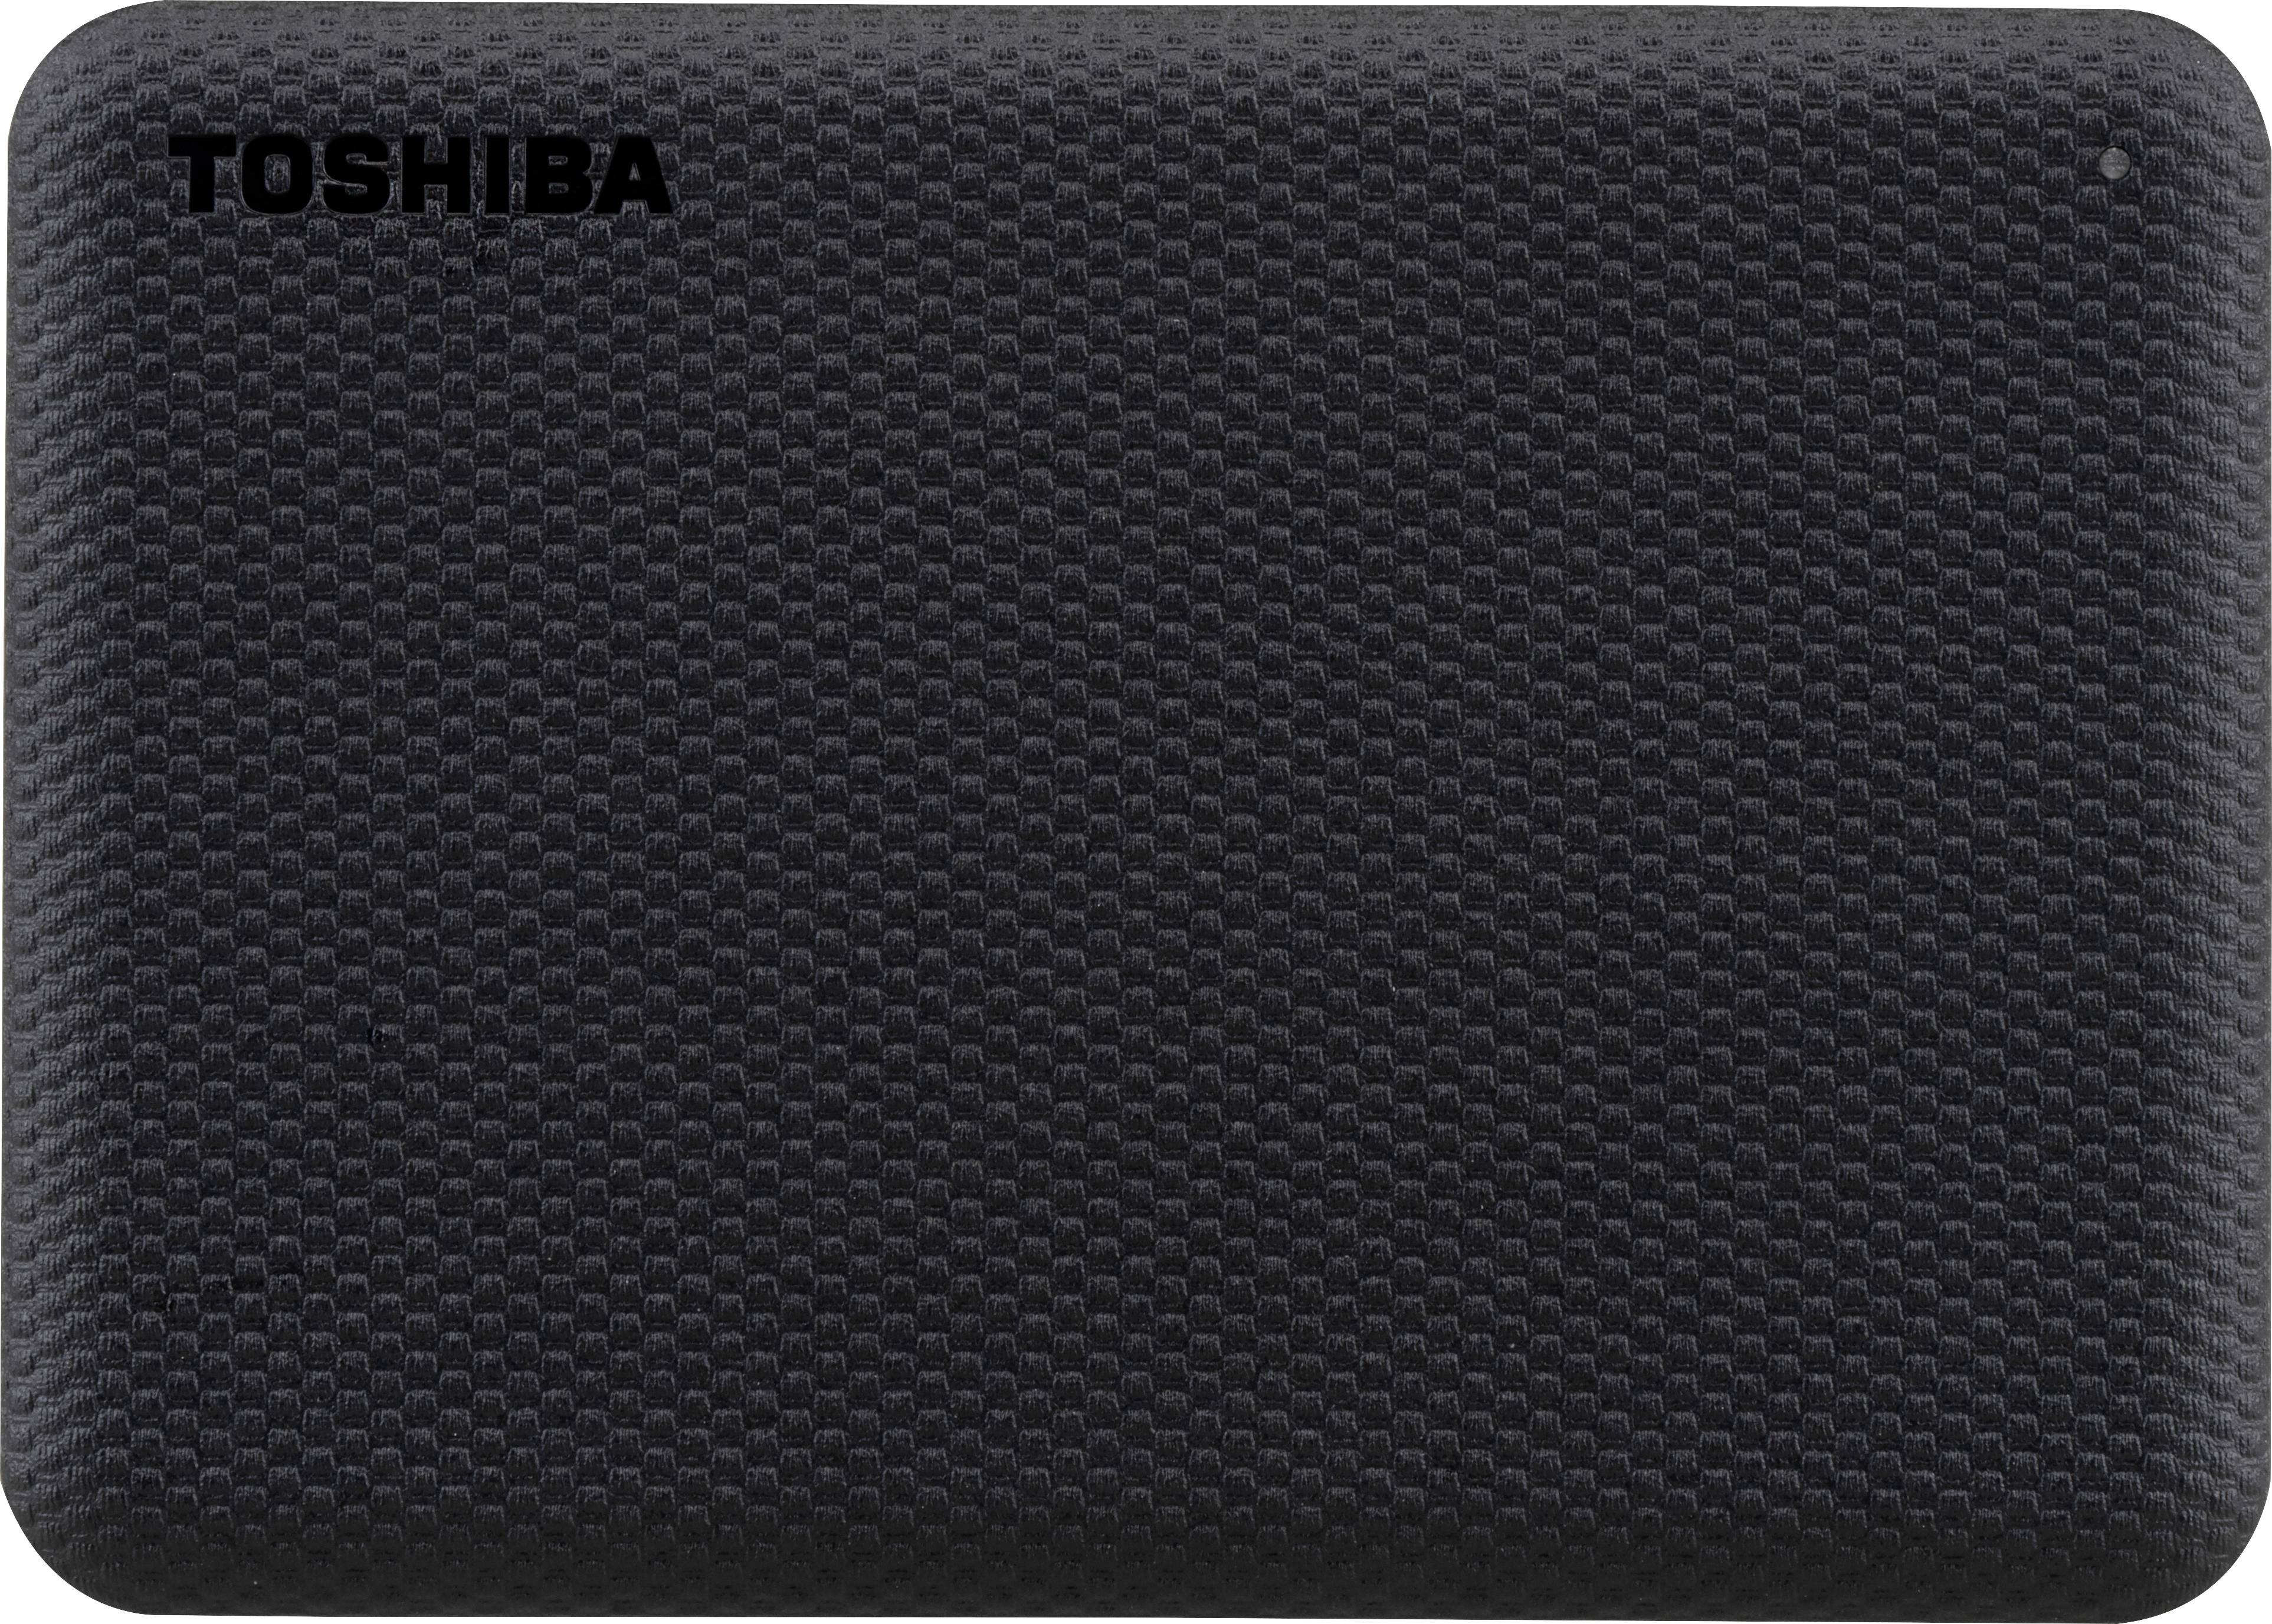 TOSHIBA Canvio Advance 2TB